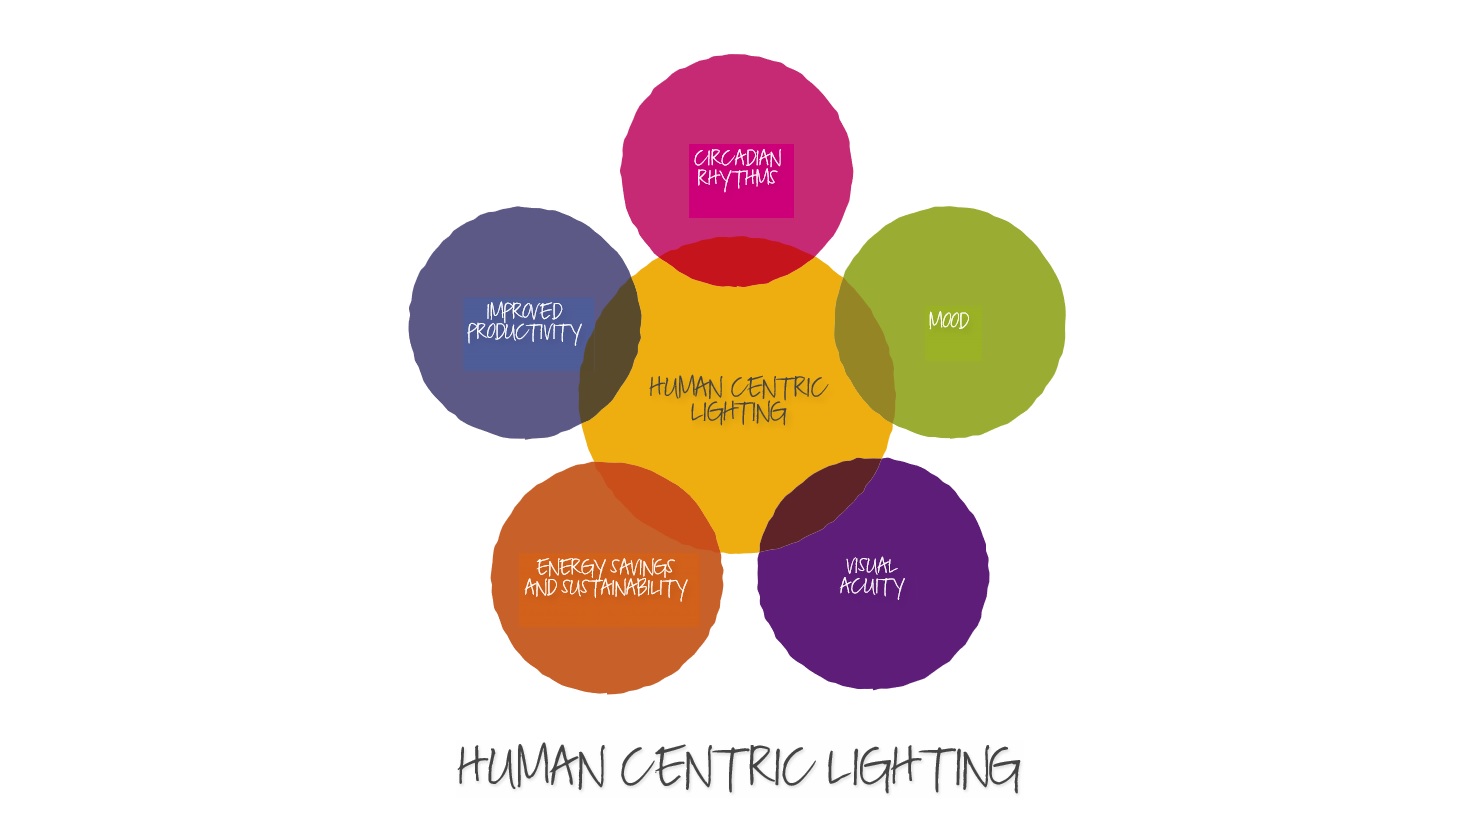 schema di come lo human centric lighting influenza il benessere delle persone